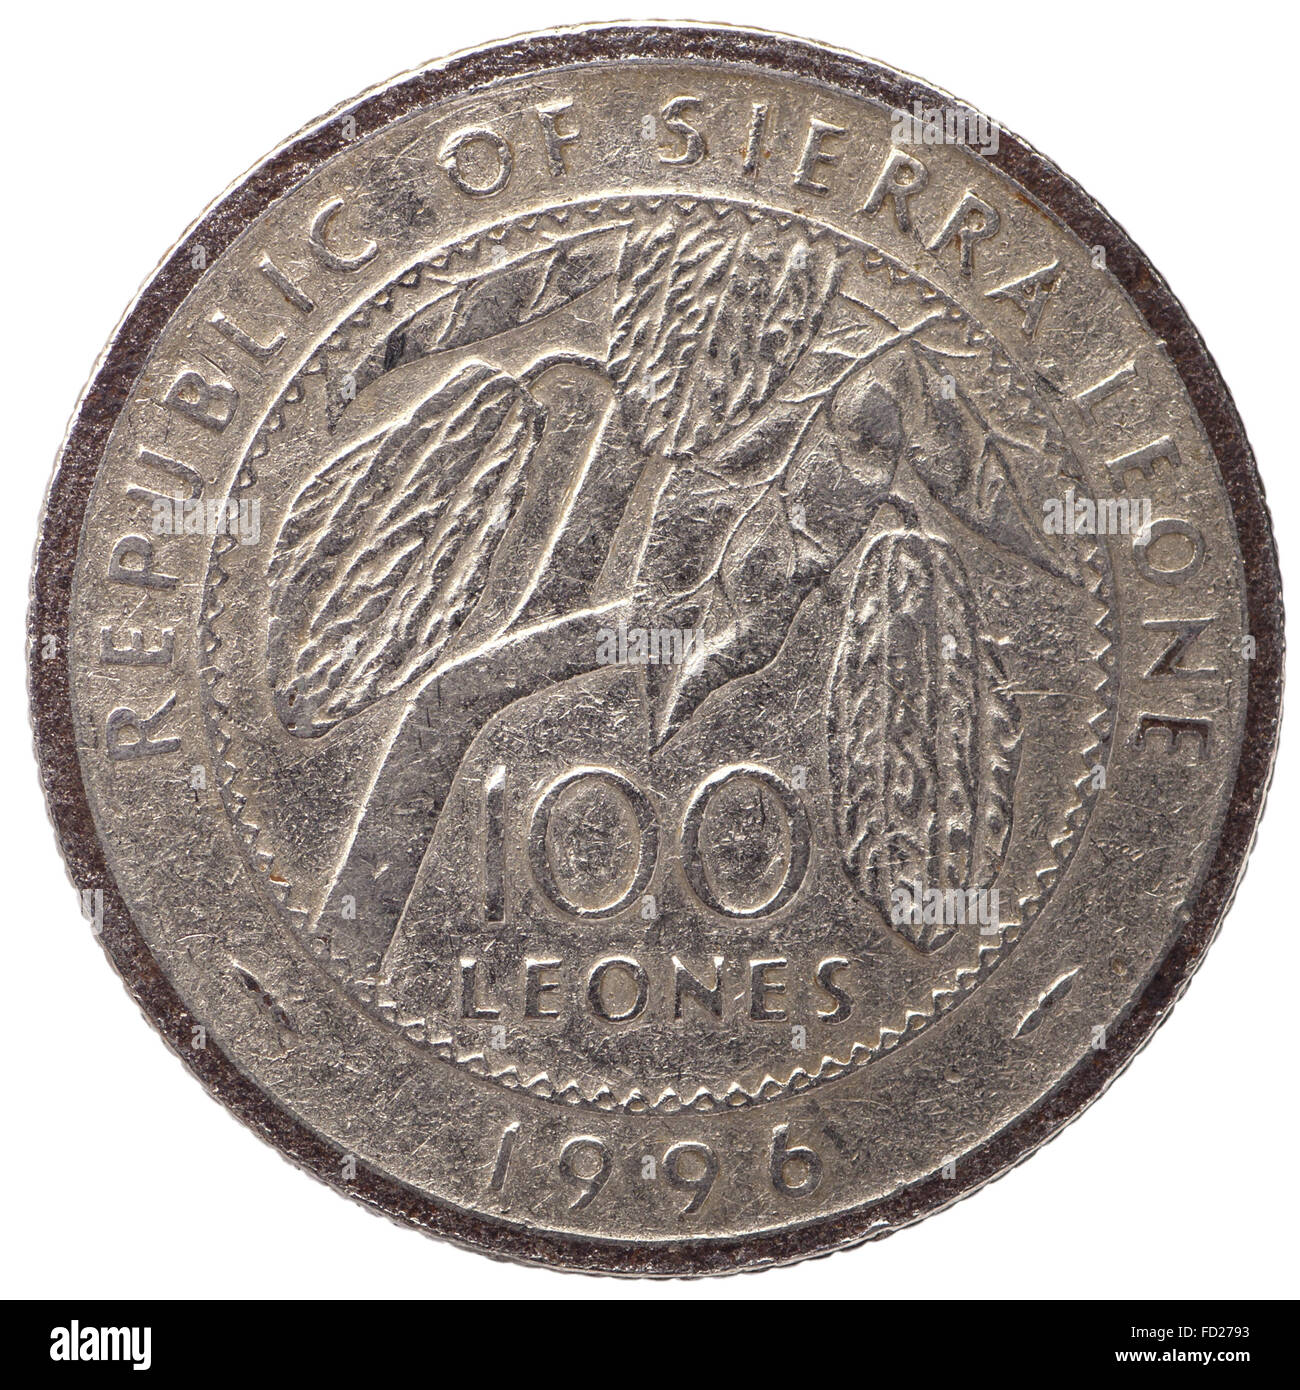 100 della Sierra Leone moneta leones, 1996, retromarcia, coin isolati su sfondo bianco Foto Stock